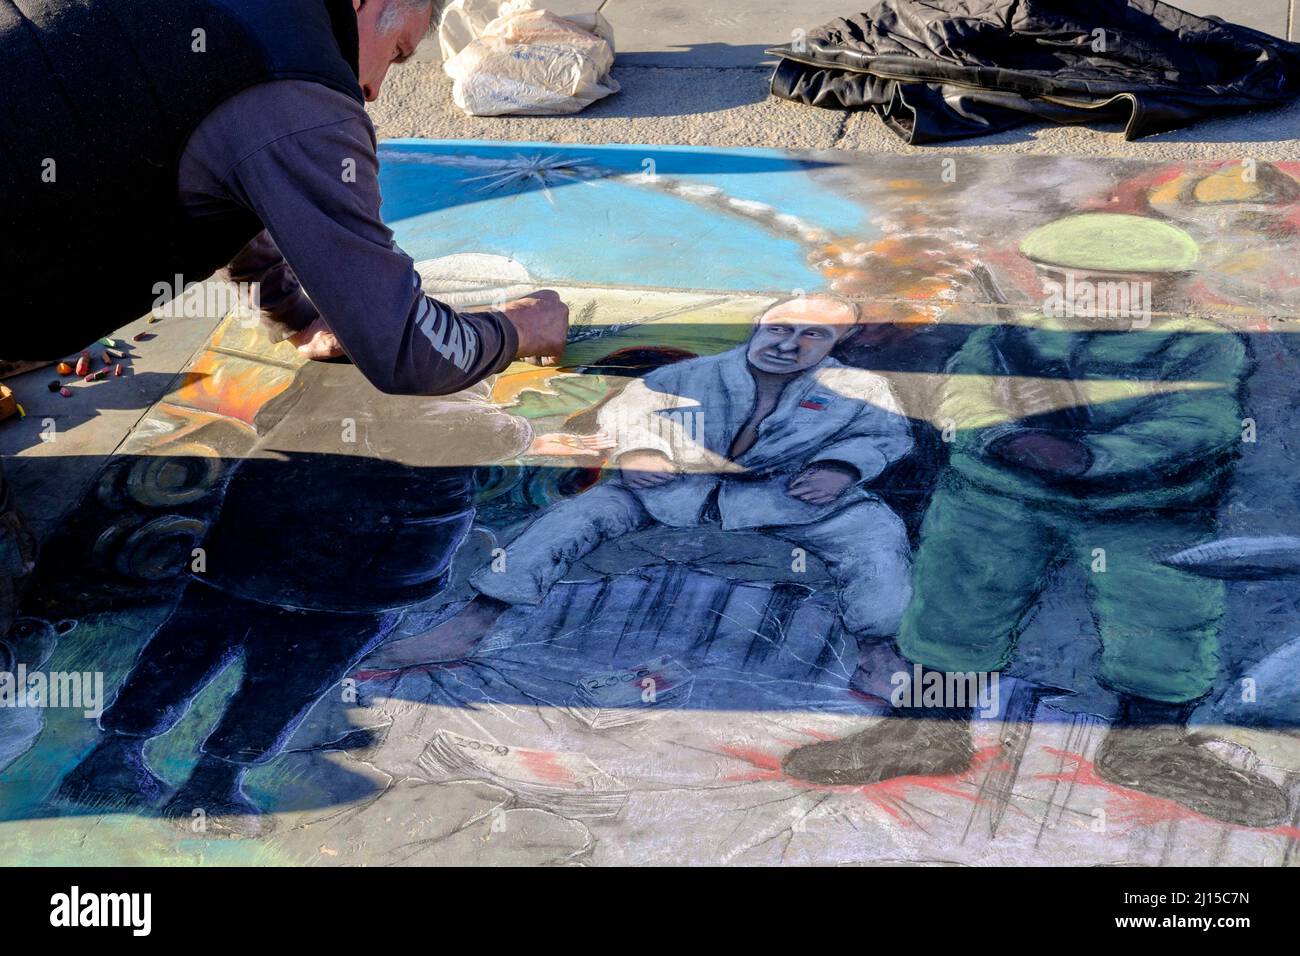 Un artista marciapiede completa opere d'arte anti-guerra raffiguranti il presidente russo Vladimir Putin. Londra, Regno Unito. Foto Stock